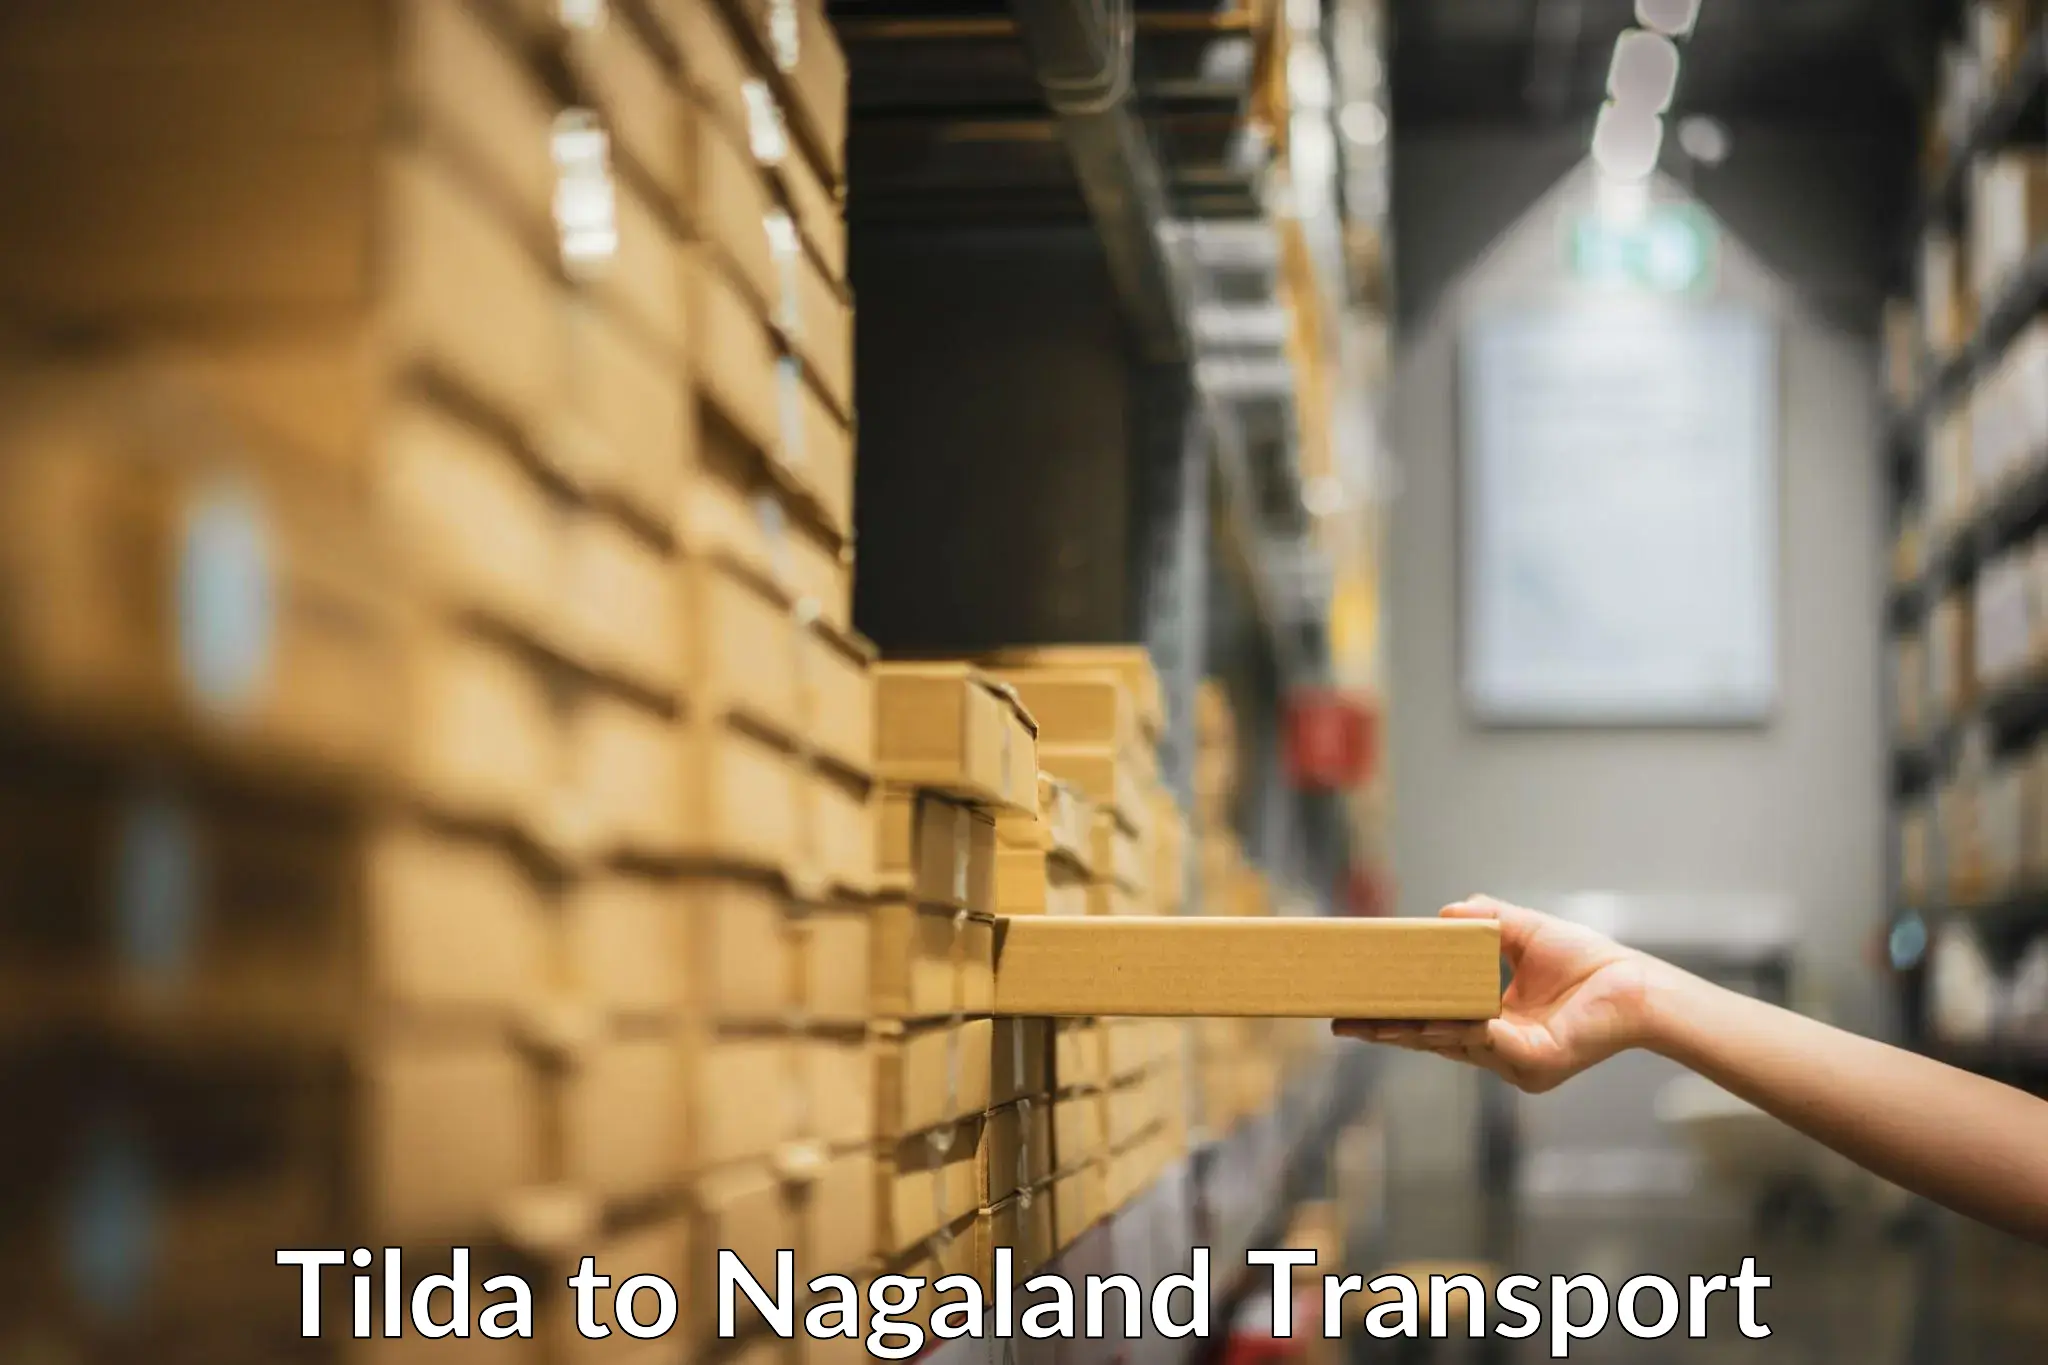 Furniture transport service Tilda to NIT Nagaland